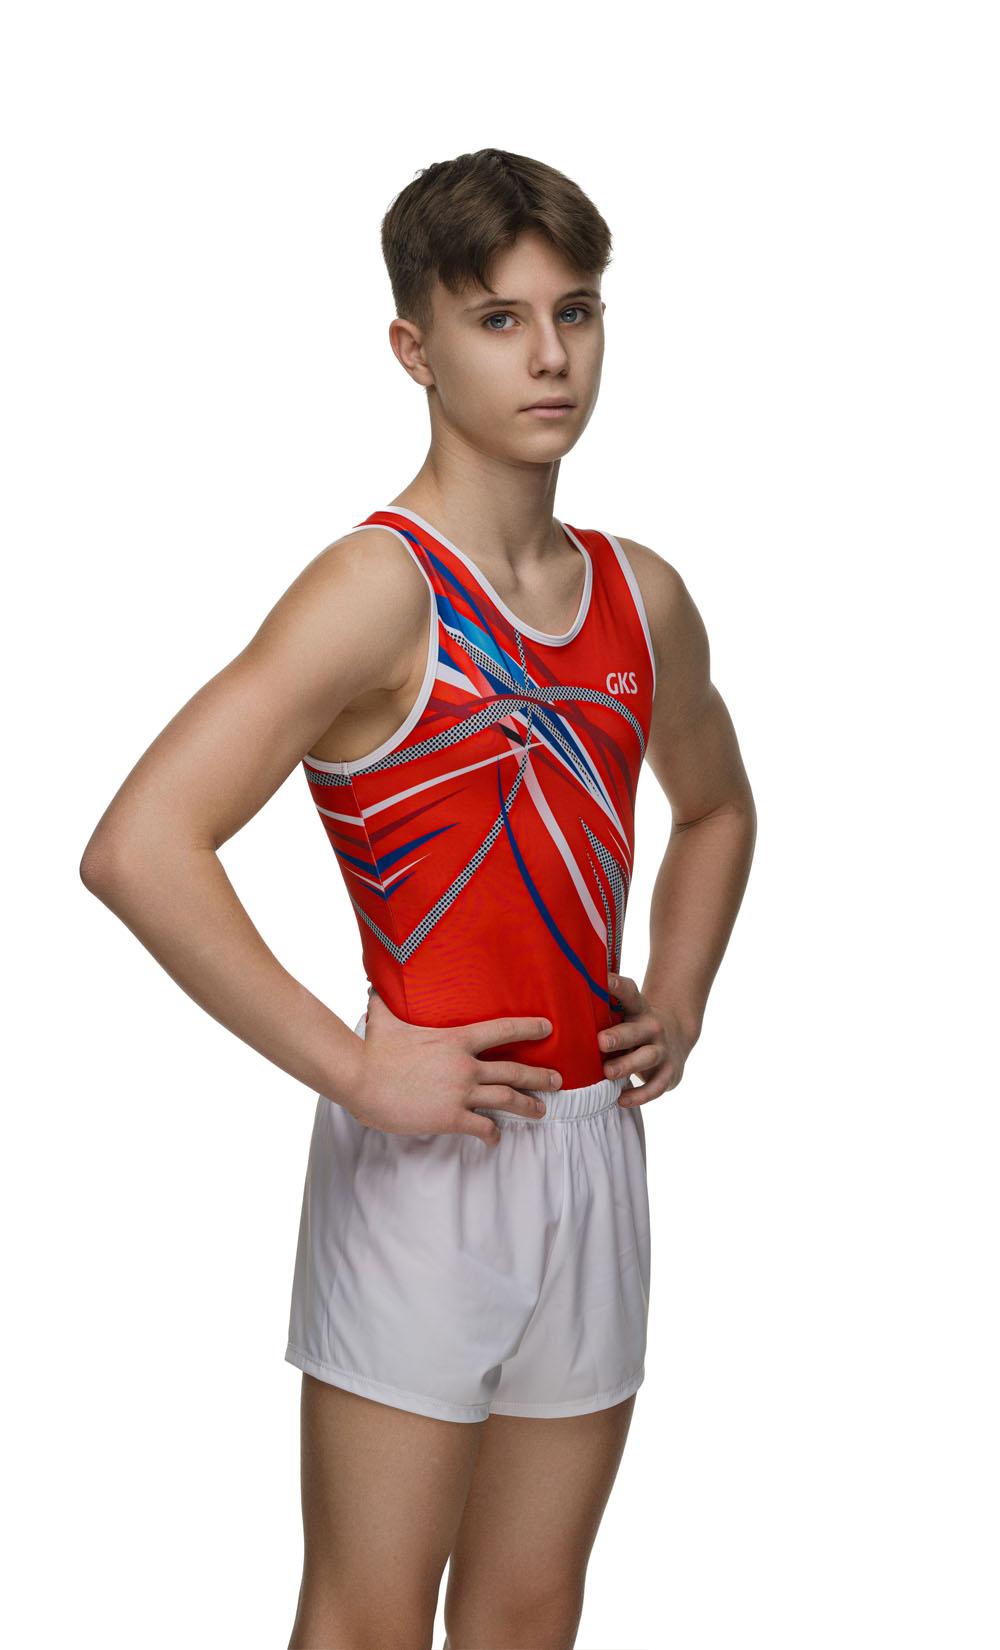 Купальник мужской для спортивной гимнастики GK Sport 201-53 красный с белым